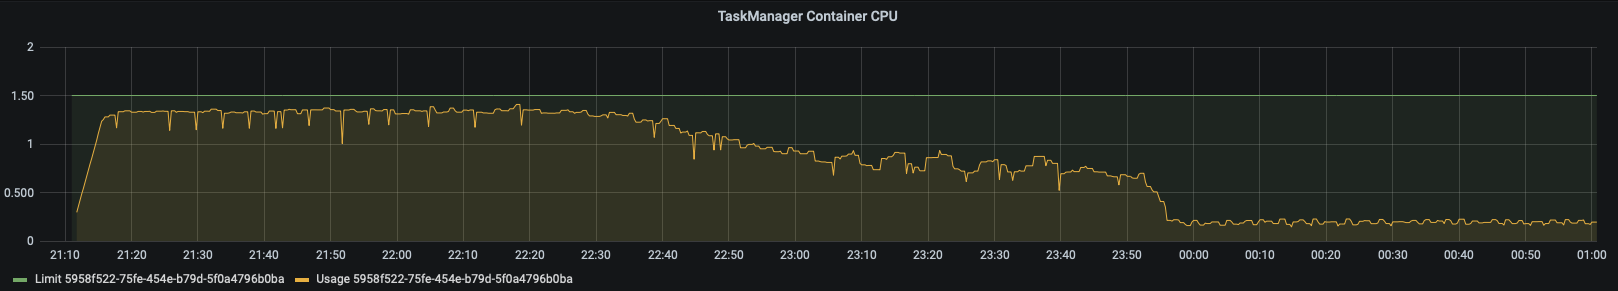 TaskManager Container CPU, Ververica Platform, Apache Flink